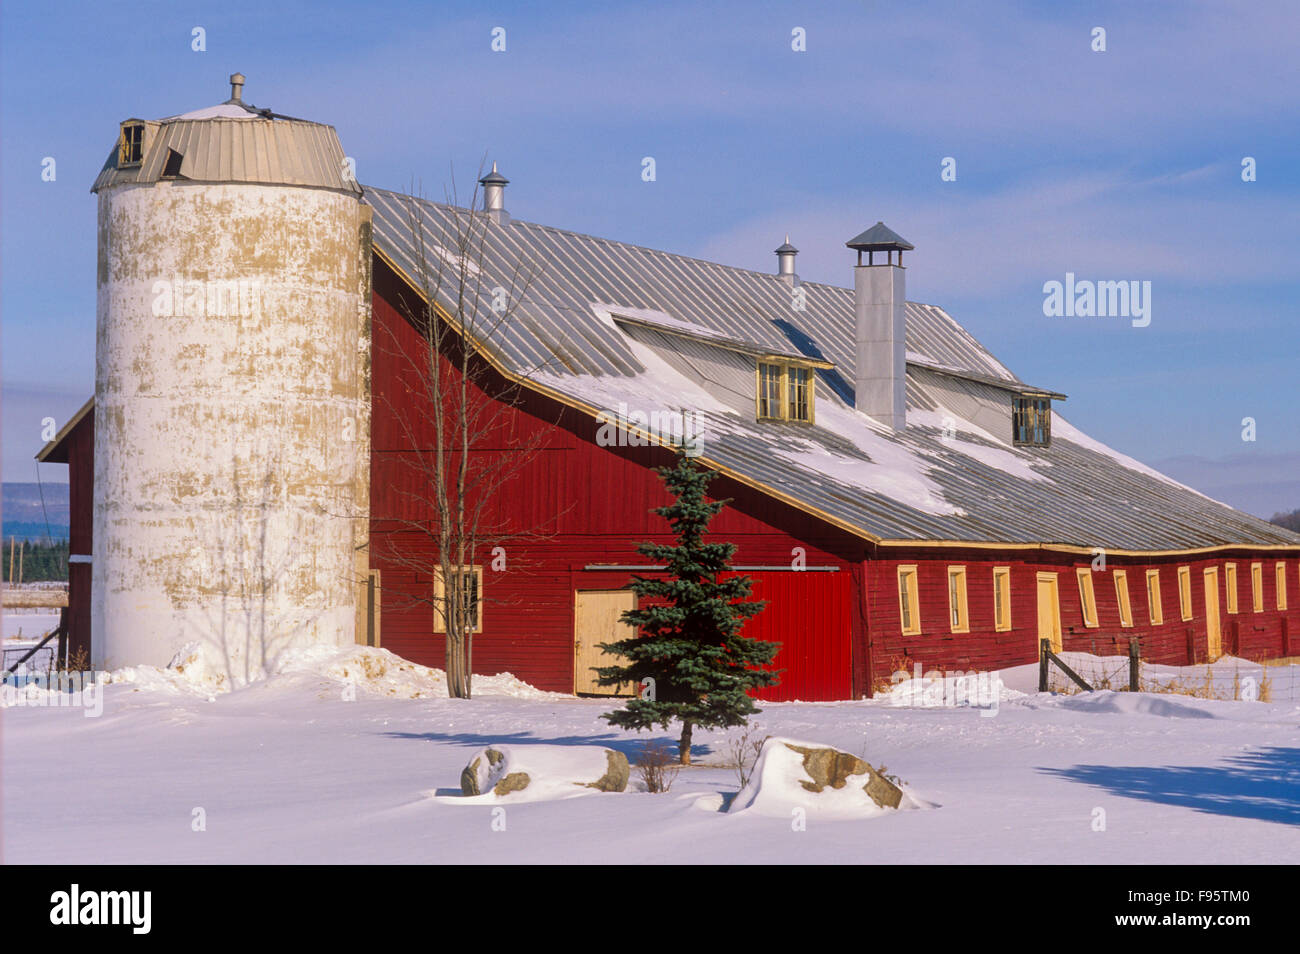 Barn, Hudson, Quebec, Canada Stock Photo